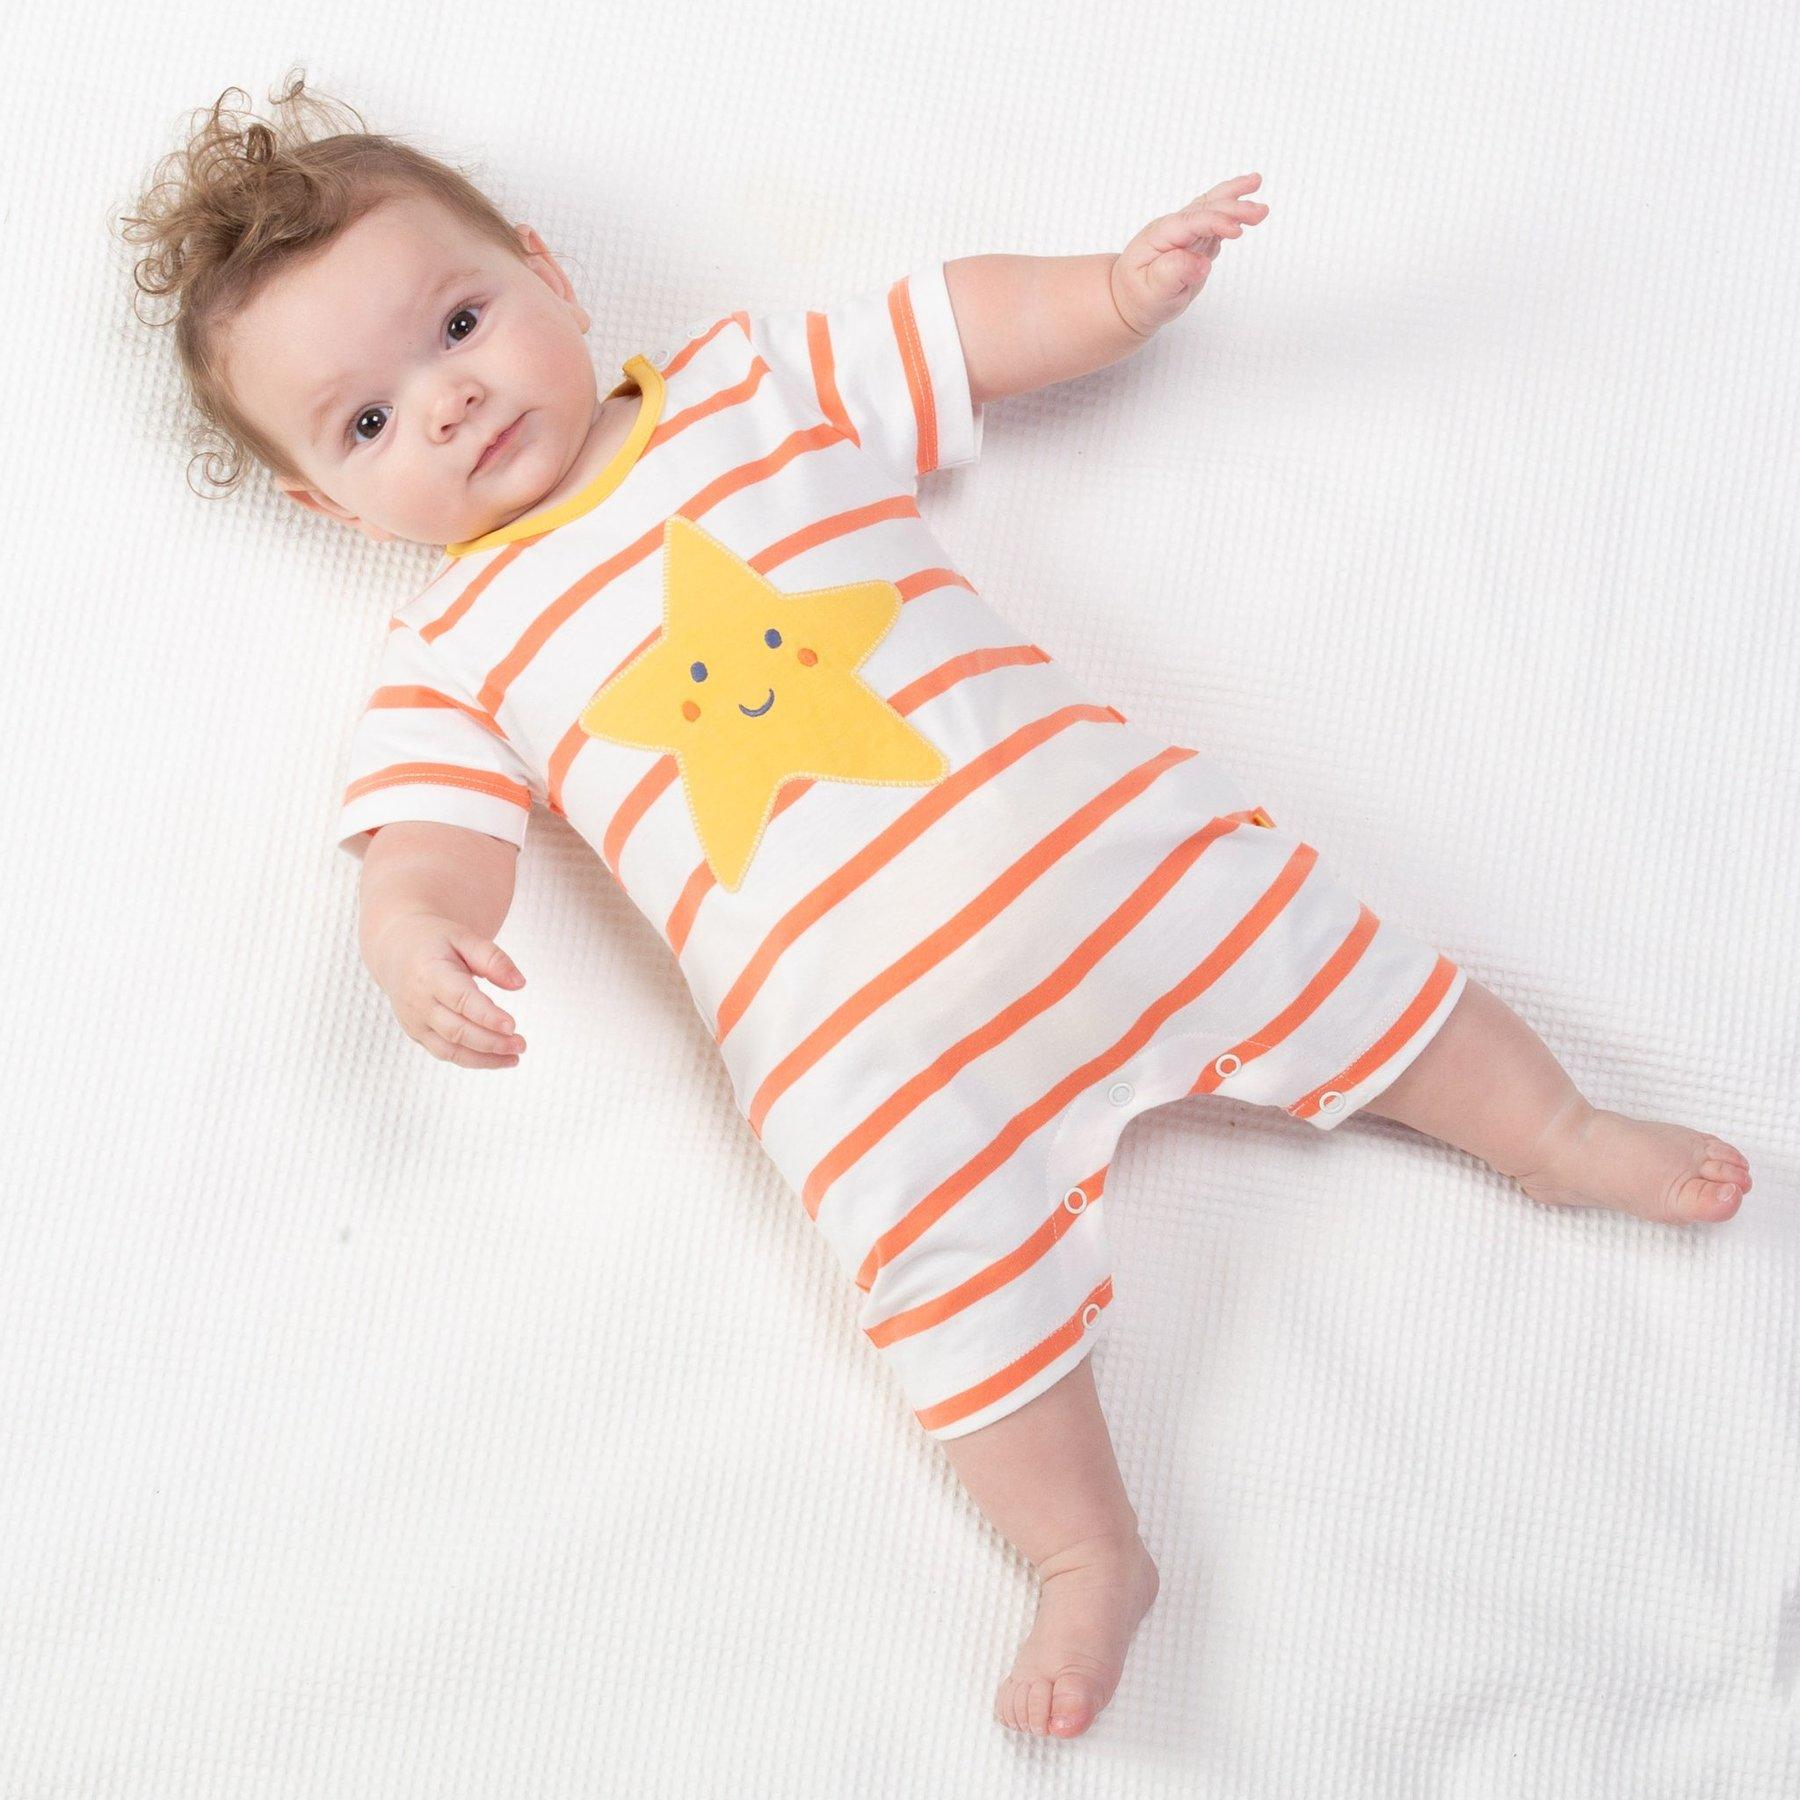 Baby wearing Kite Clothing Starfish Romper